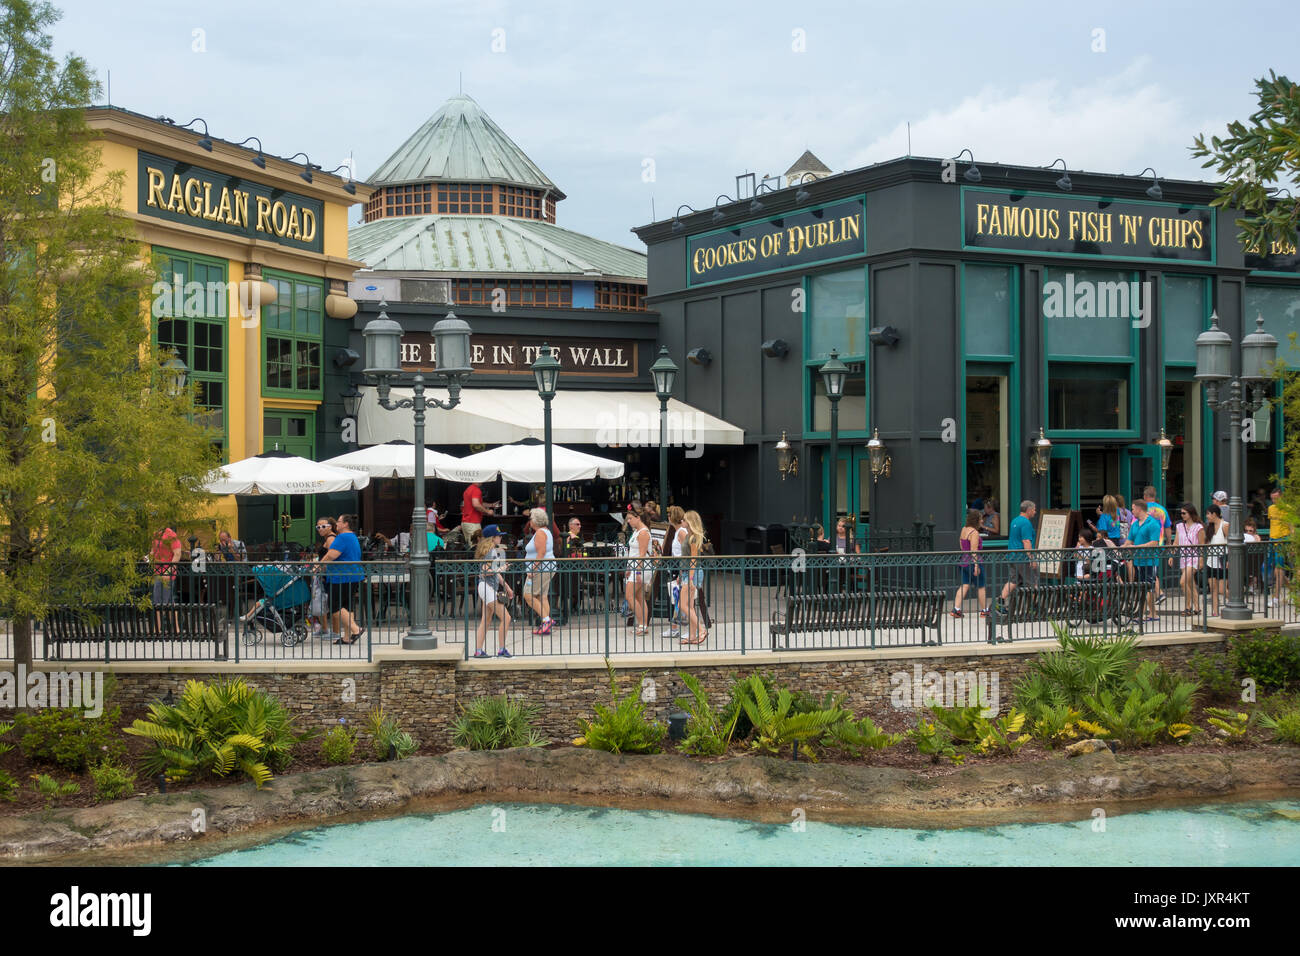 Route de raglan et cookes dublin restaurants dans les ressorts de Disney, Walt Disney World, Orlando, Floride. Banque D'Images